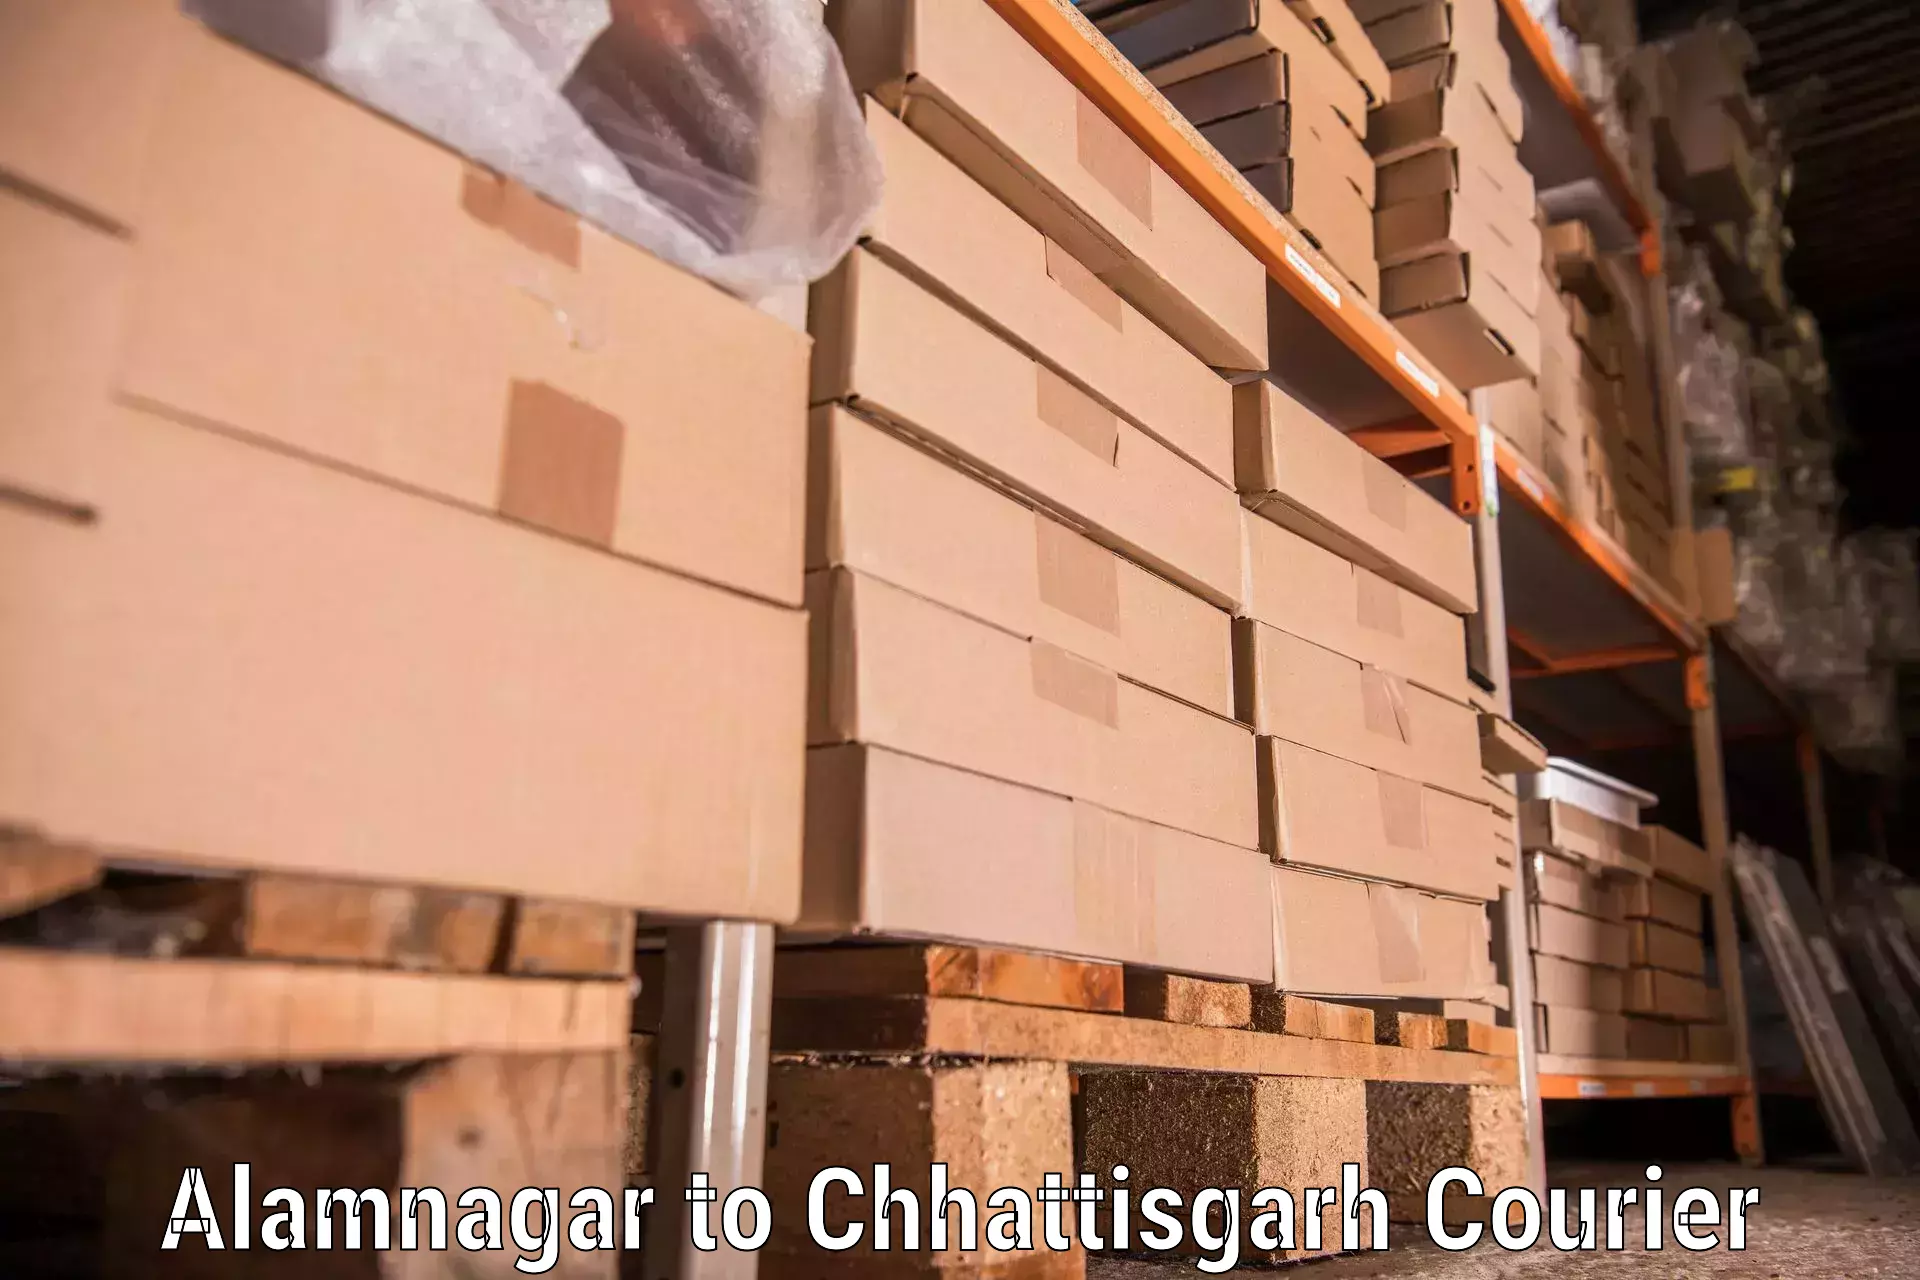 Furniture moving experts Alamnagar to Baramkela